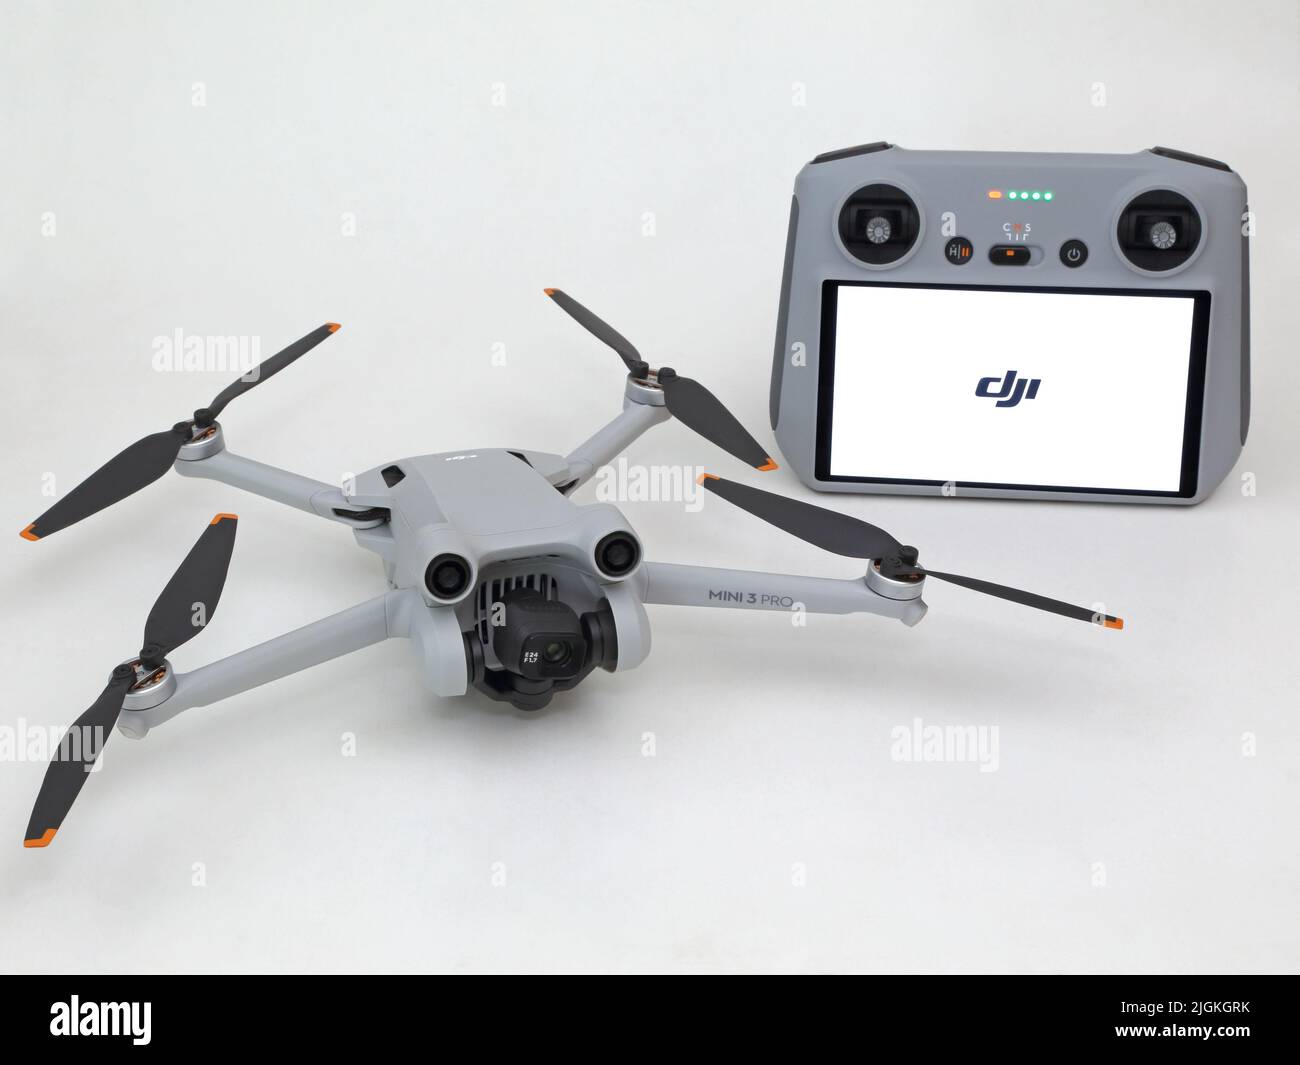 USA - 8 luglio 2022: Un drone DJI Mini 3 Pro / UAV (veicolo aereo senza equipaggio) e telecomando sono mostrati da vicino, su sfondo bianco. Foto Stock